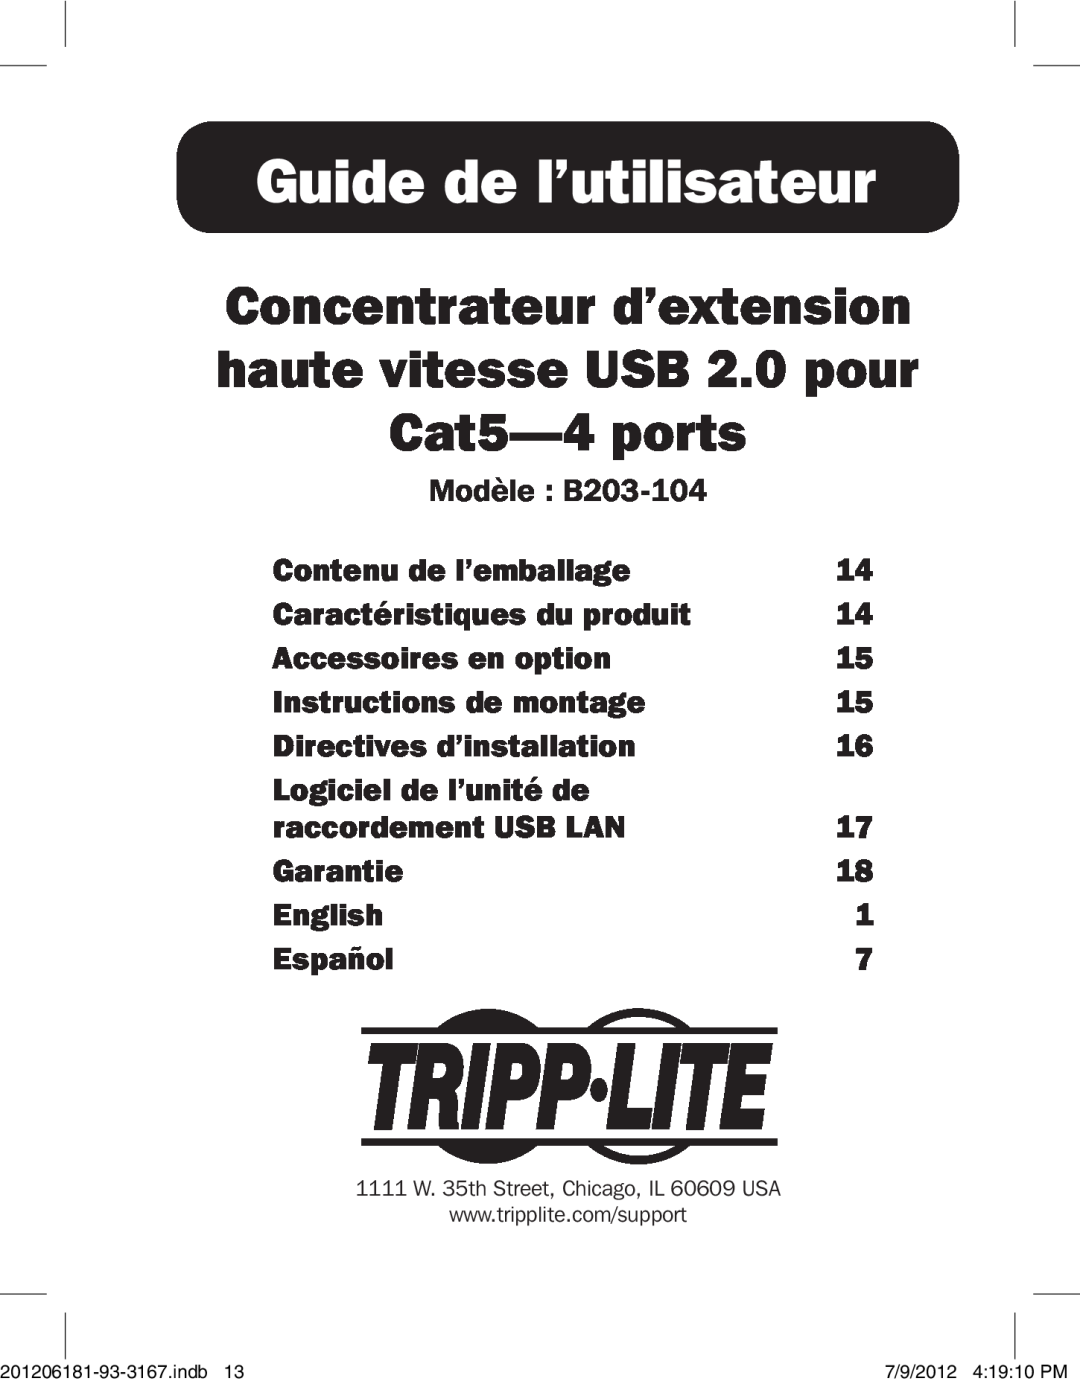 Tripp Lite B203-104 Guide de l’utilisateur, Concentrateur d’extension haute vitesse USB 2.0 pour Cat5-4 ports, Garantie 